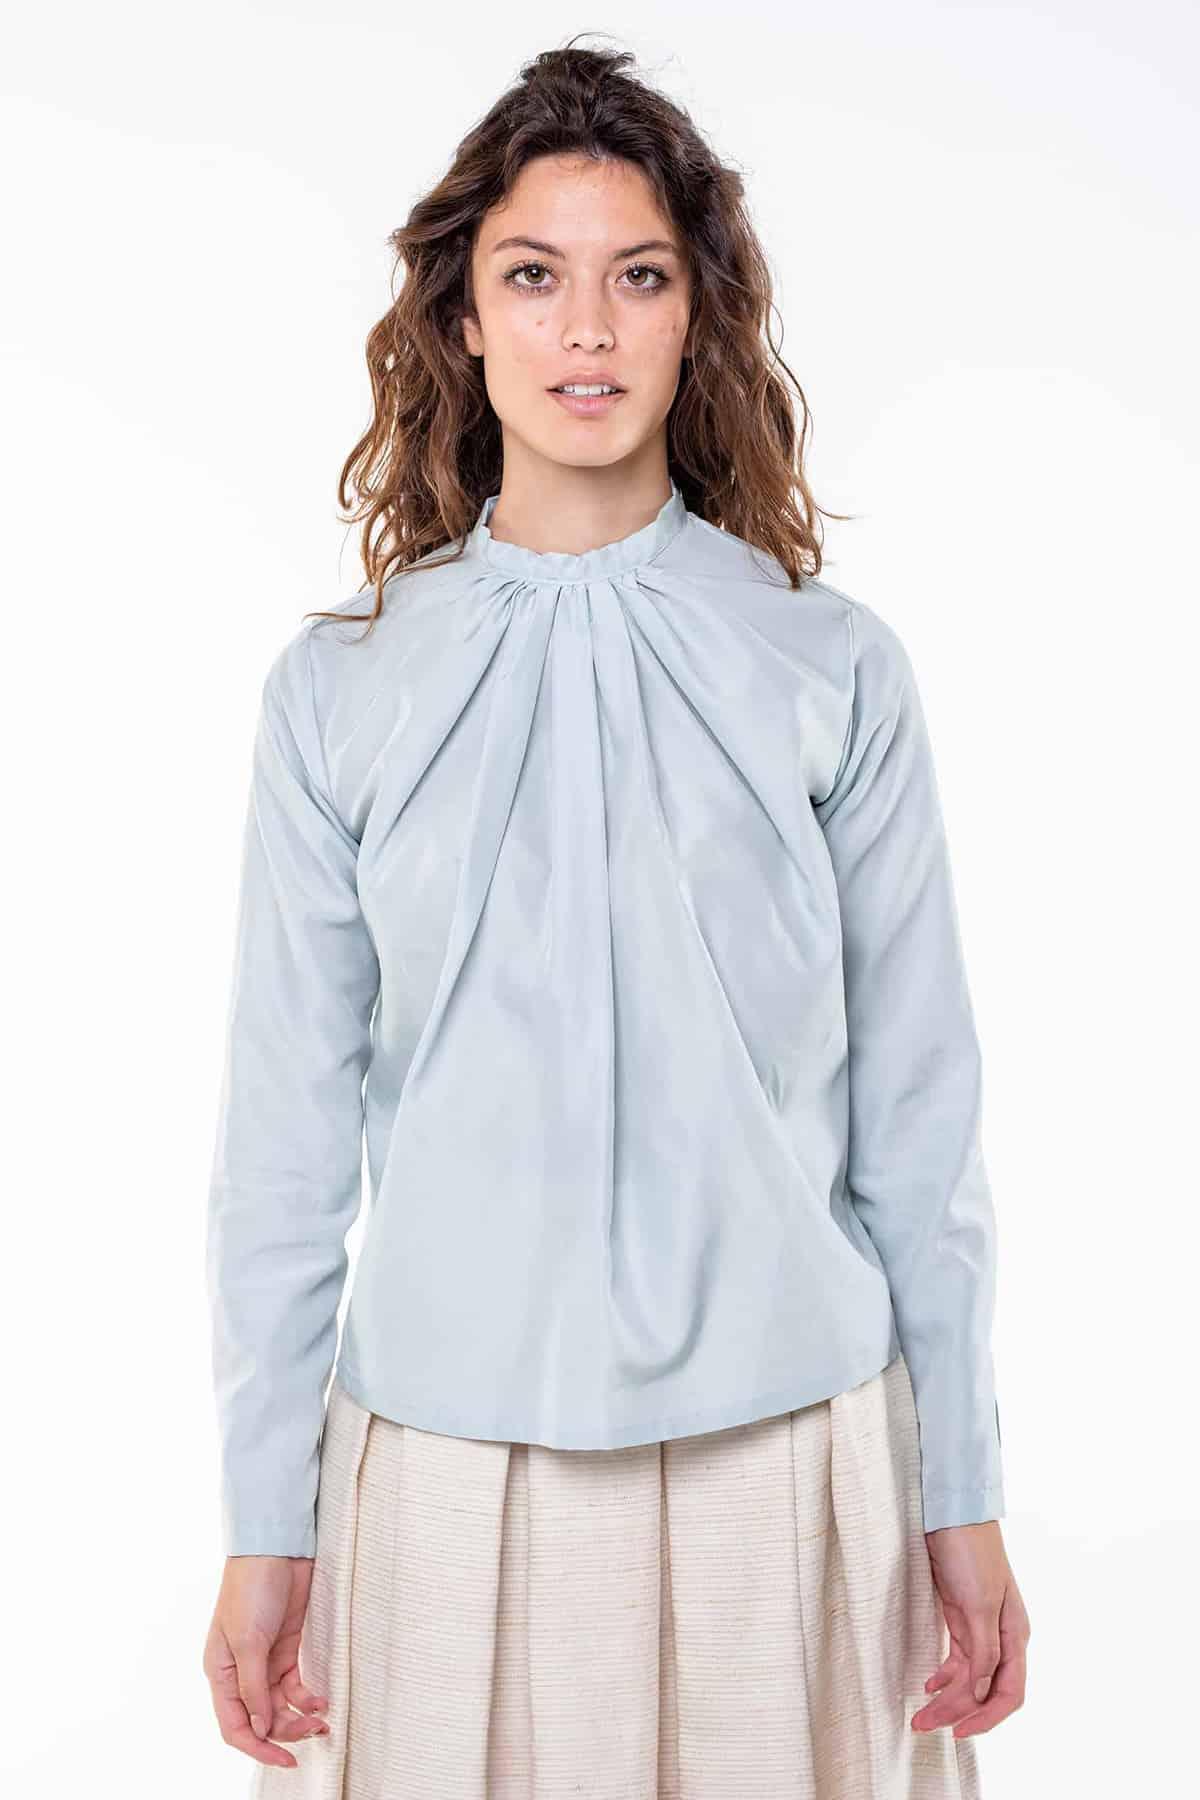 Camicia SVEVA Cupro grs ecologico Cotone Biologico Moda Sostenibile Artigianale brand Malia Lab camicia sartoriale blusa su misura